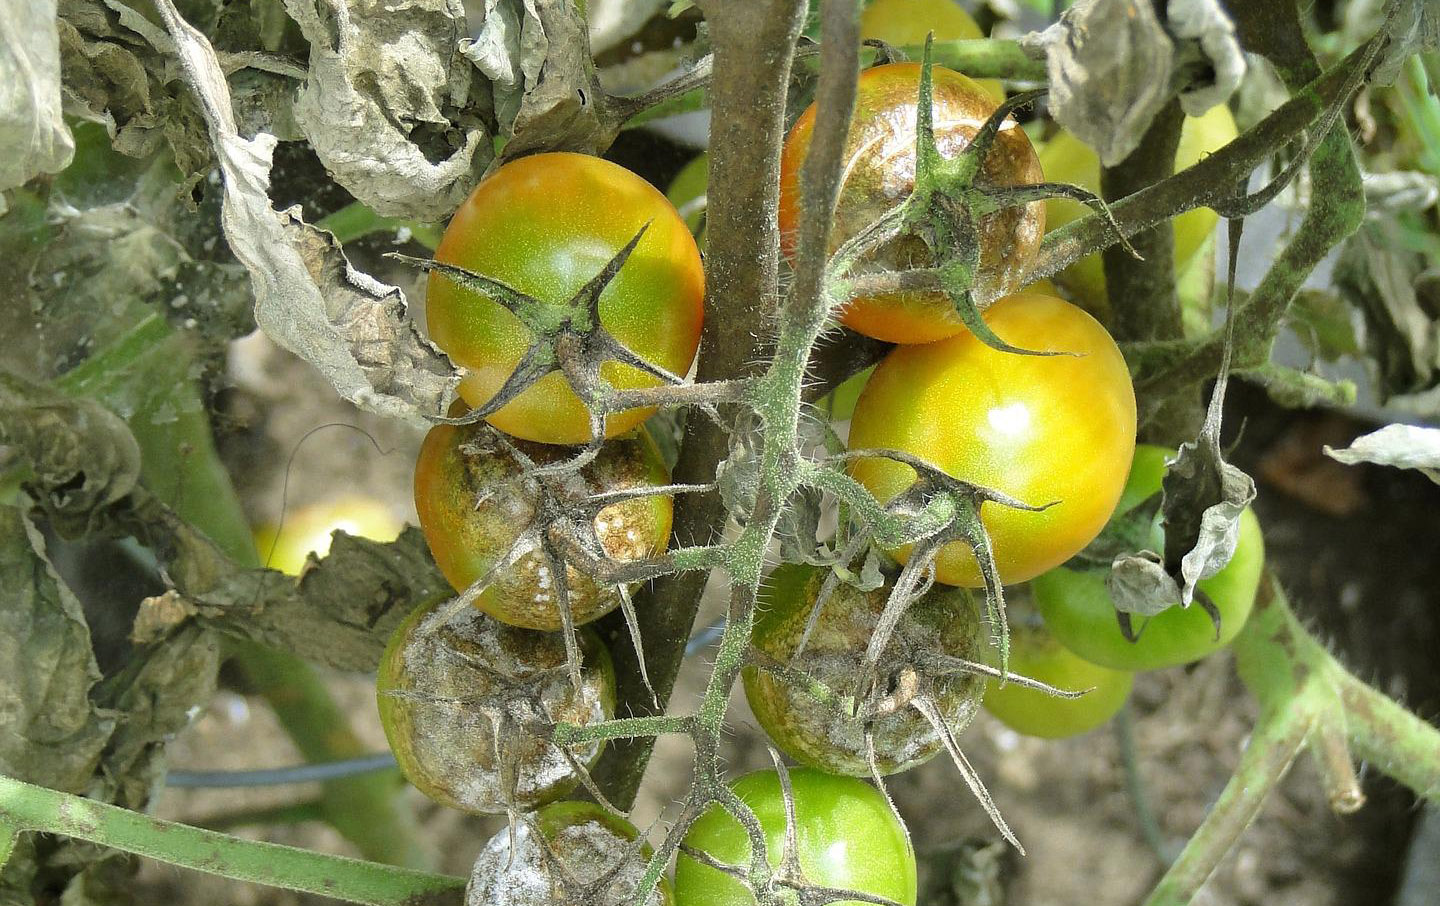 Tomato blight in garden.